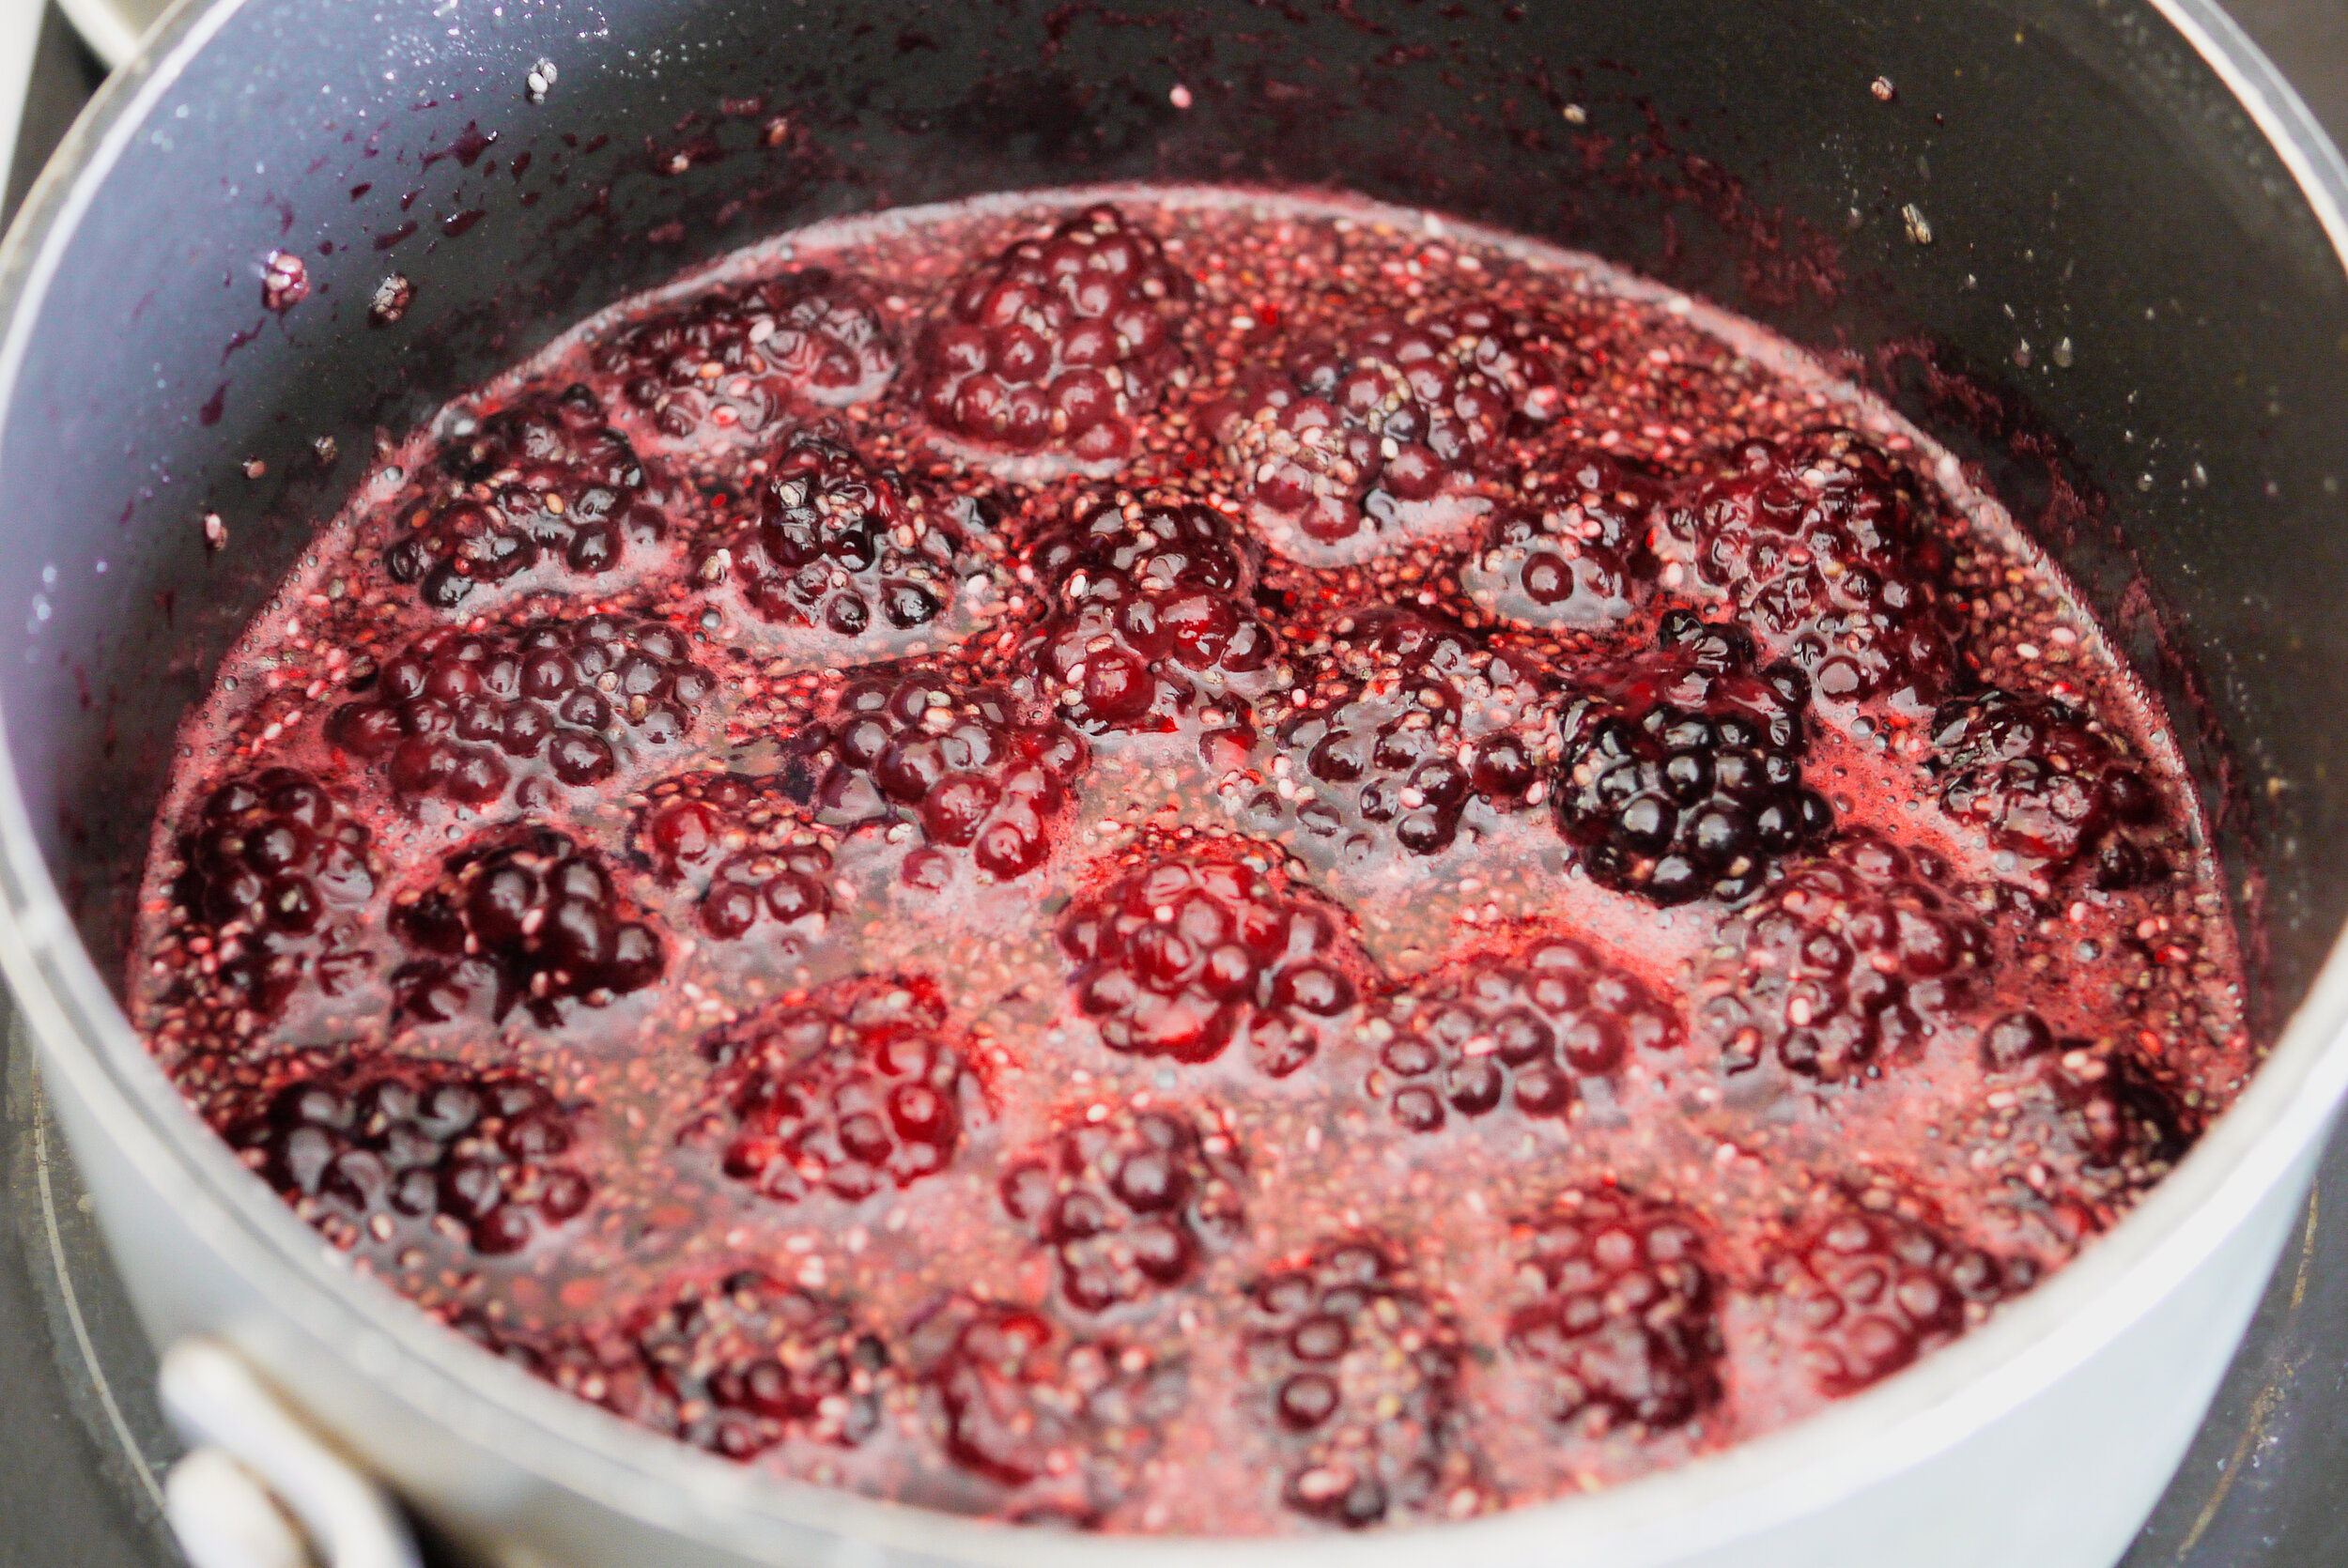 Blackberry jam by kam sokhi allergy chef 